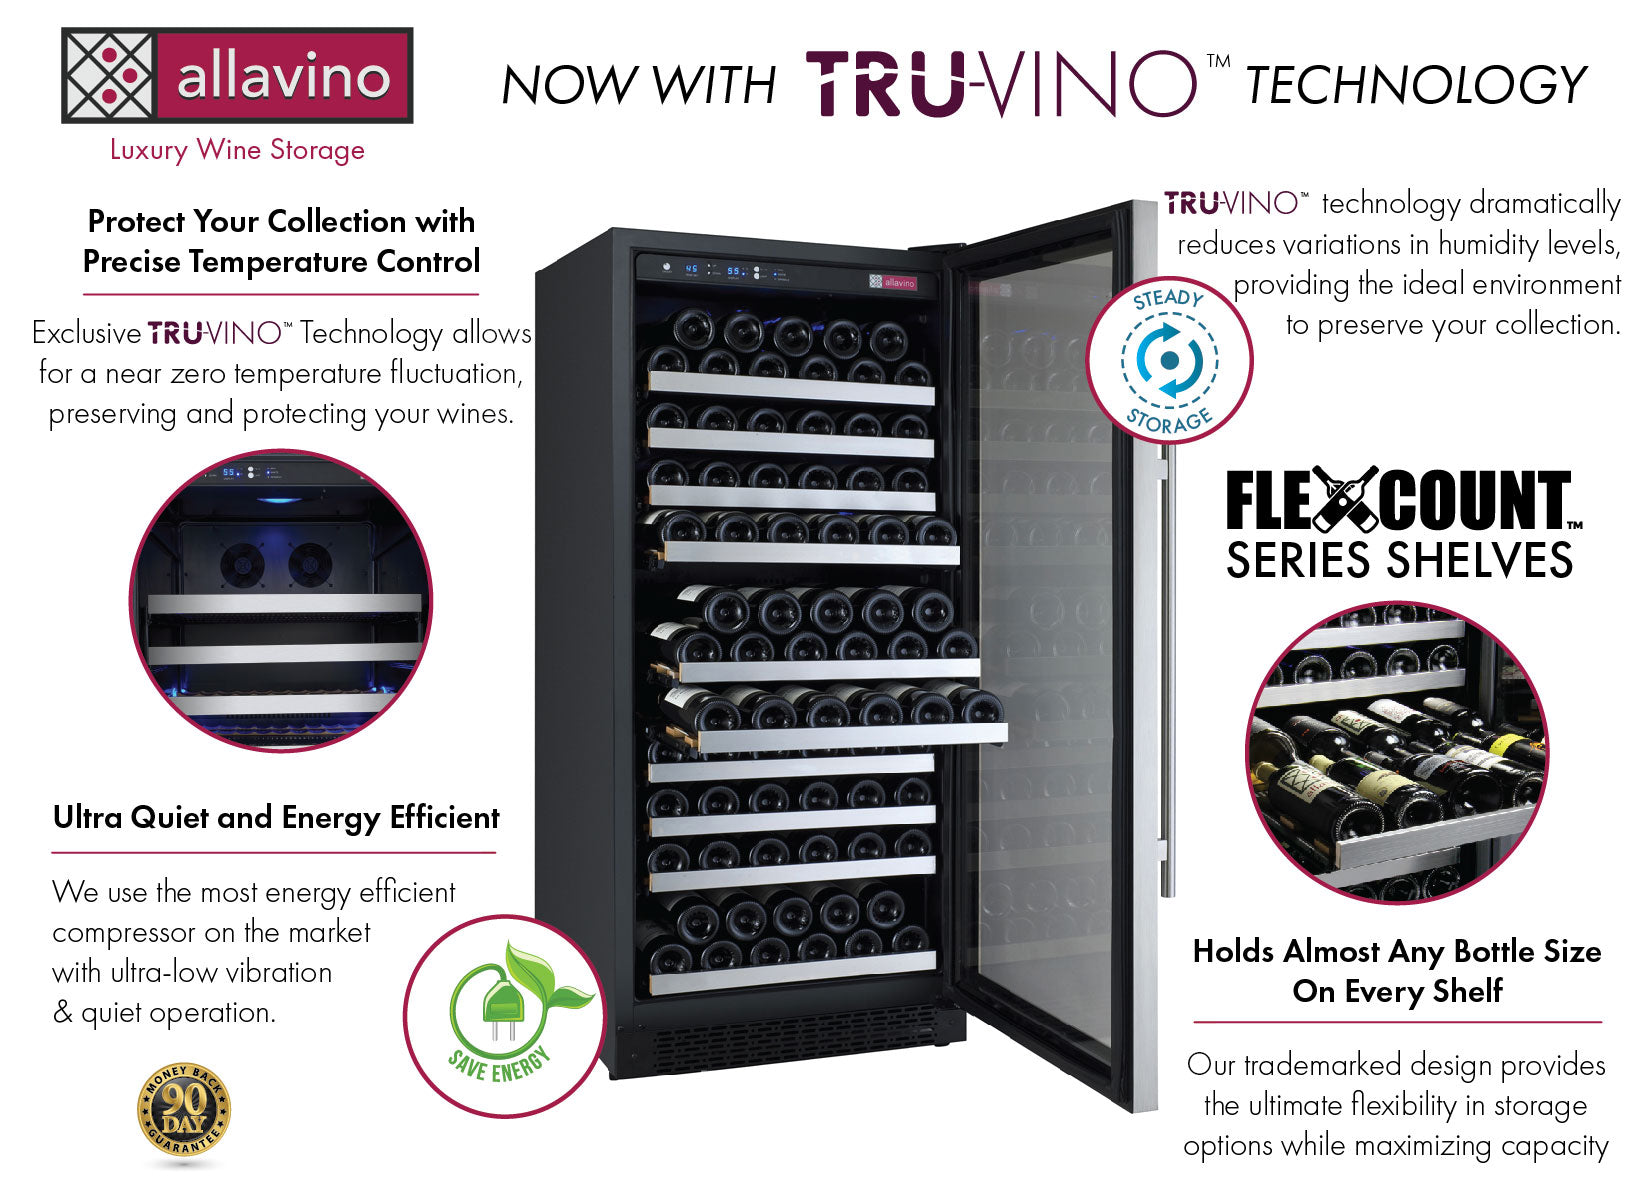 Allavino 47" Wide FlexCount II Tru-Vino 256 Bottle Dual Zone Stainless Steel Side-by-Side Wine Refrigerator